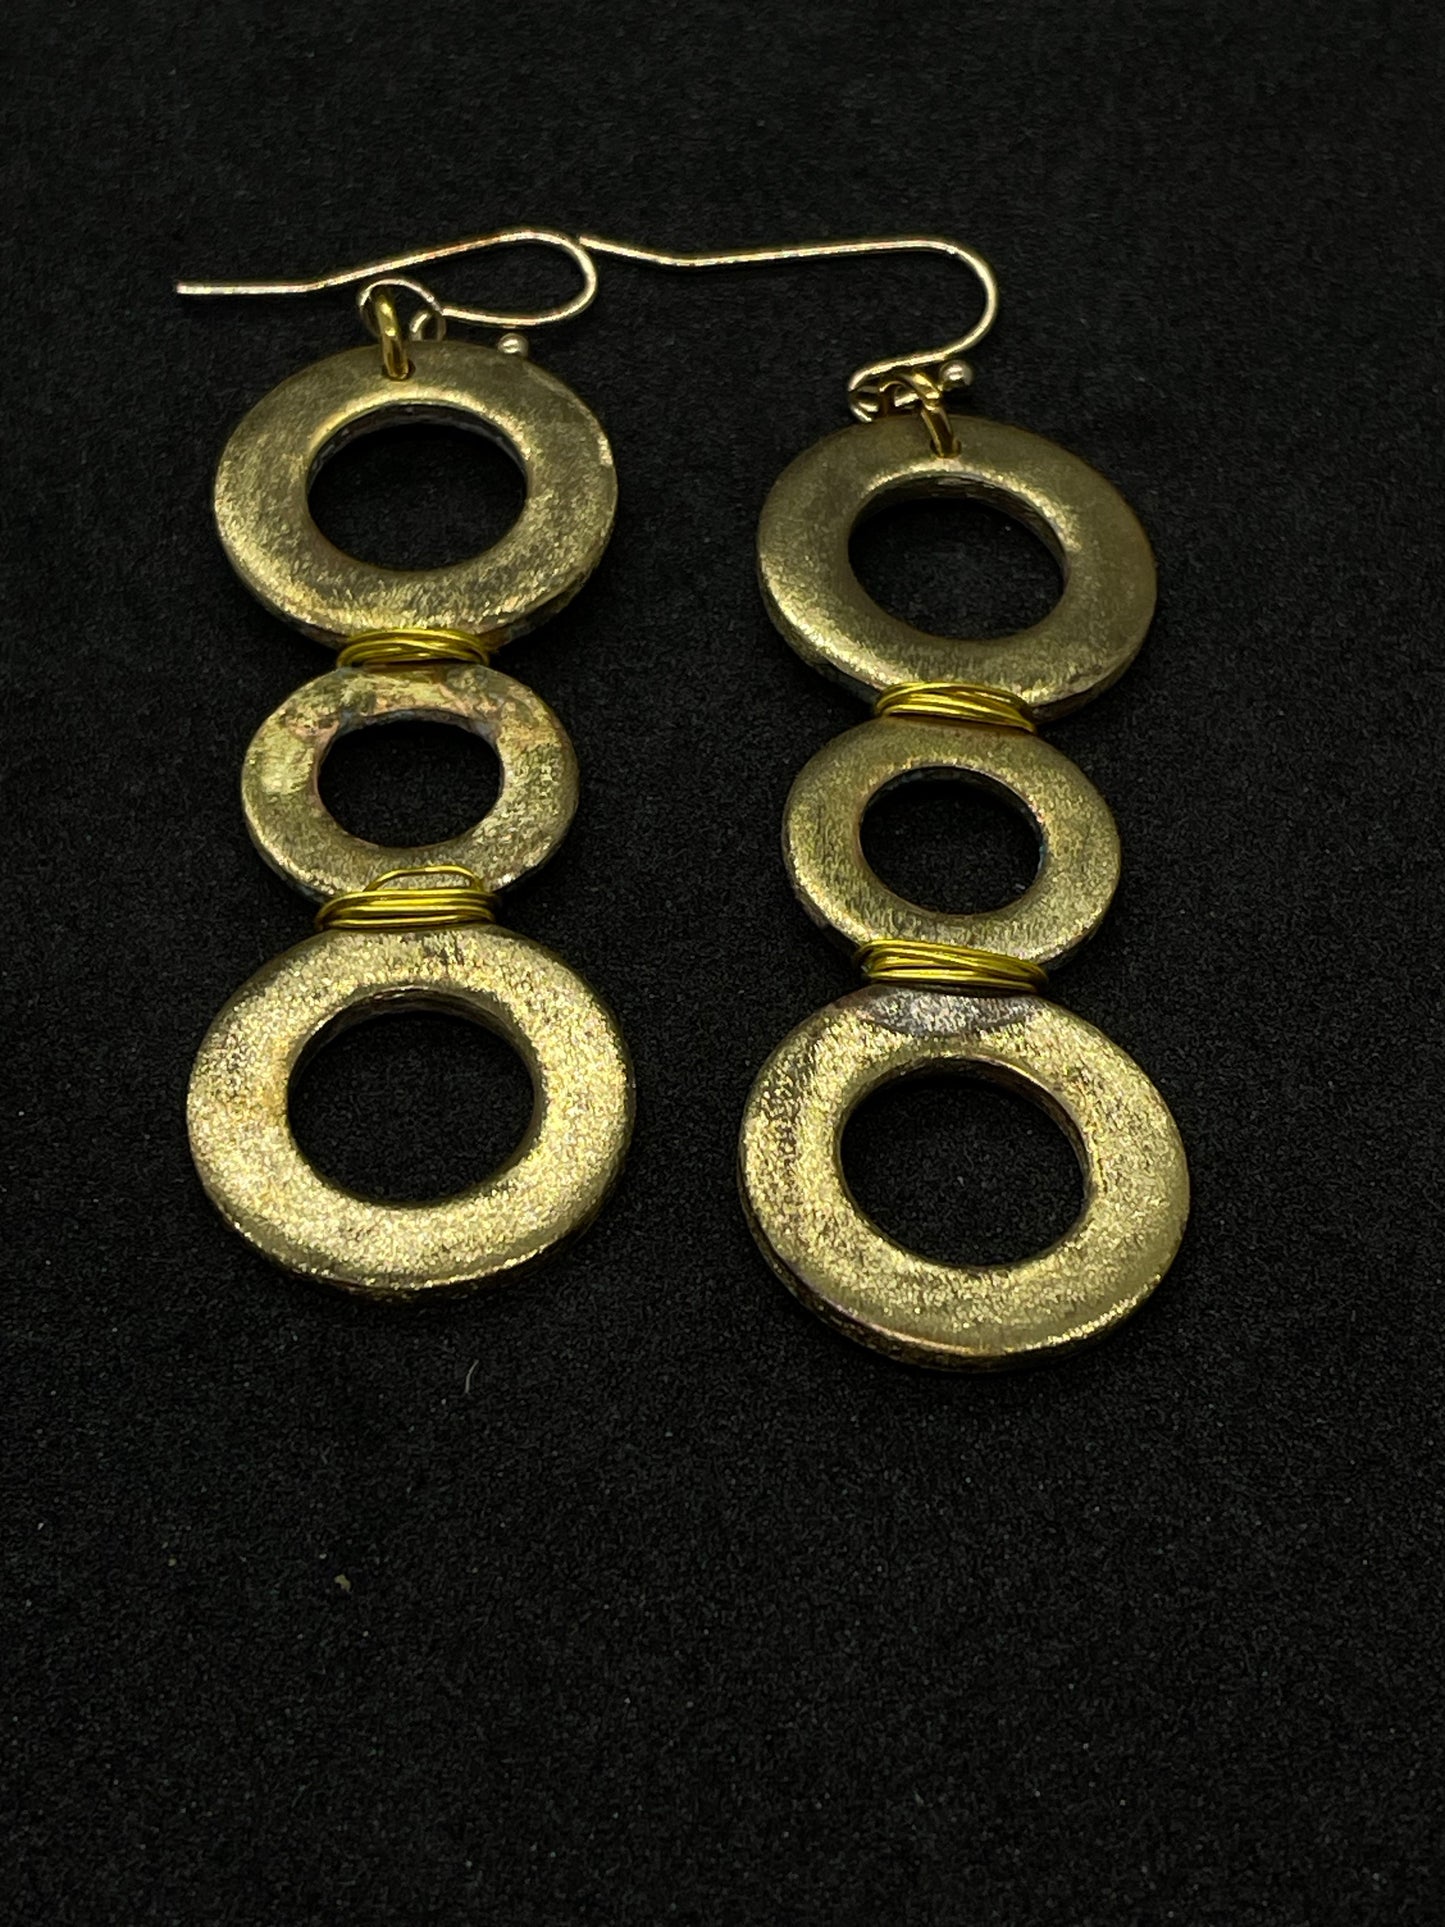 3 ring brass drop earrings